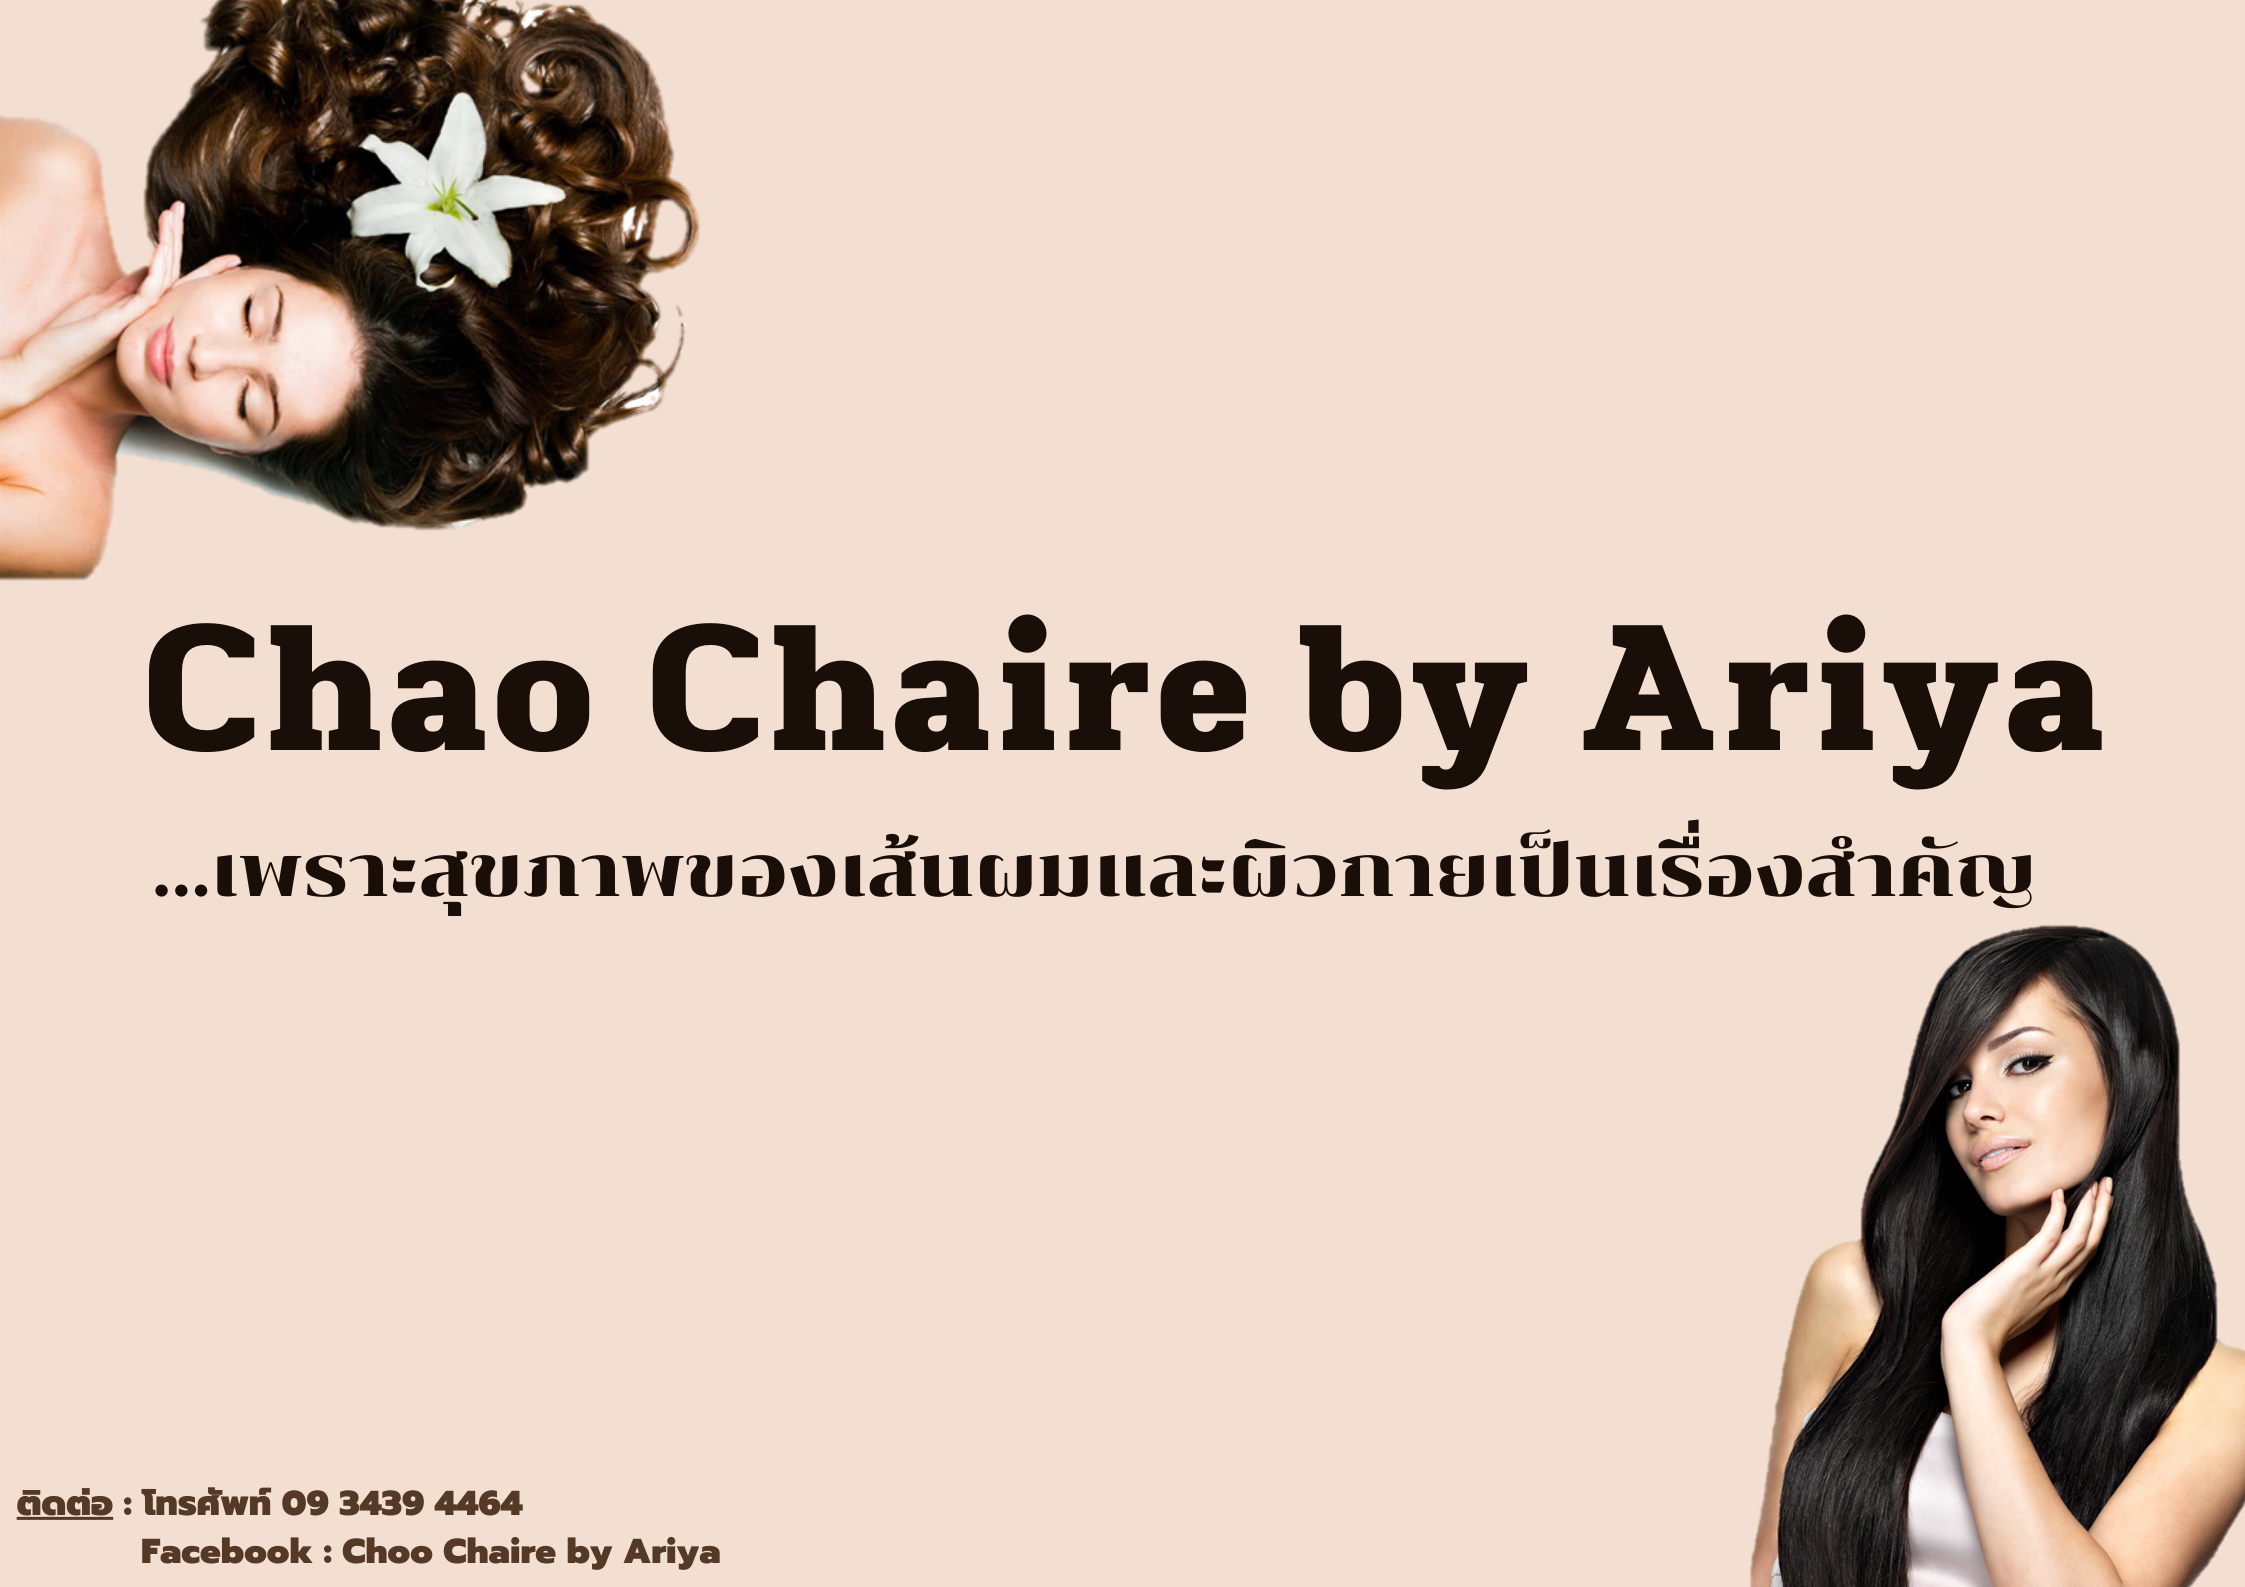 Chao Chaire by Ariya (1)